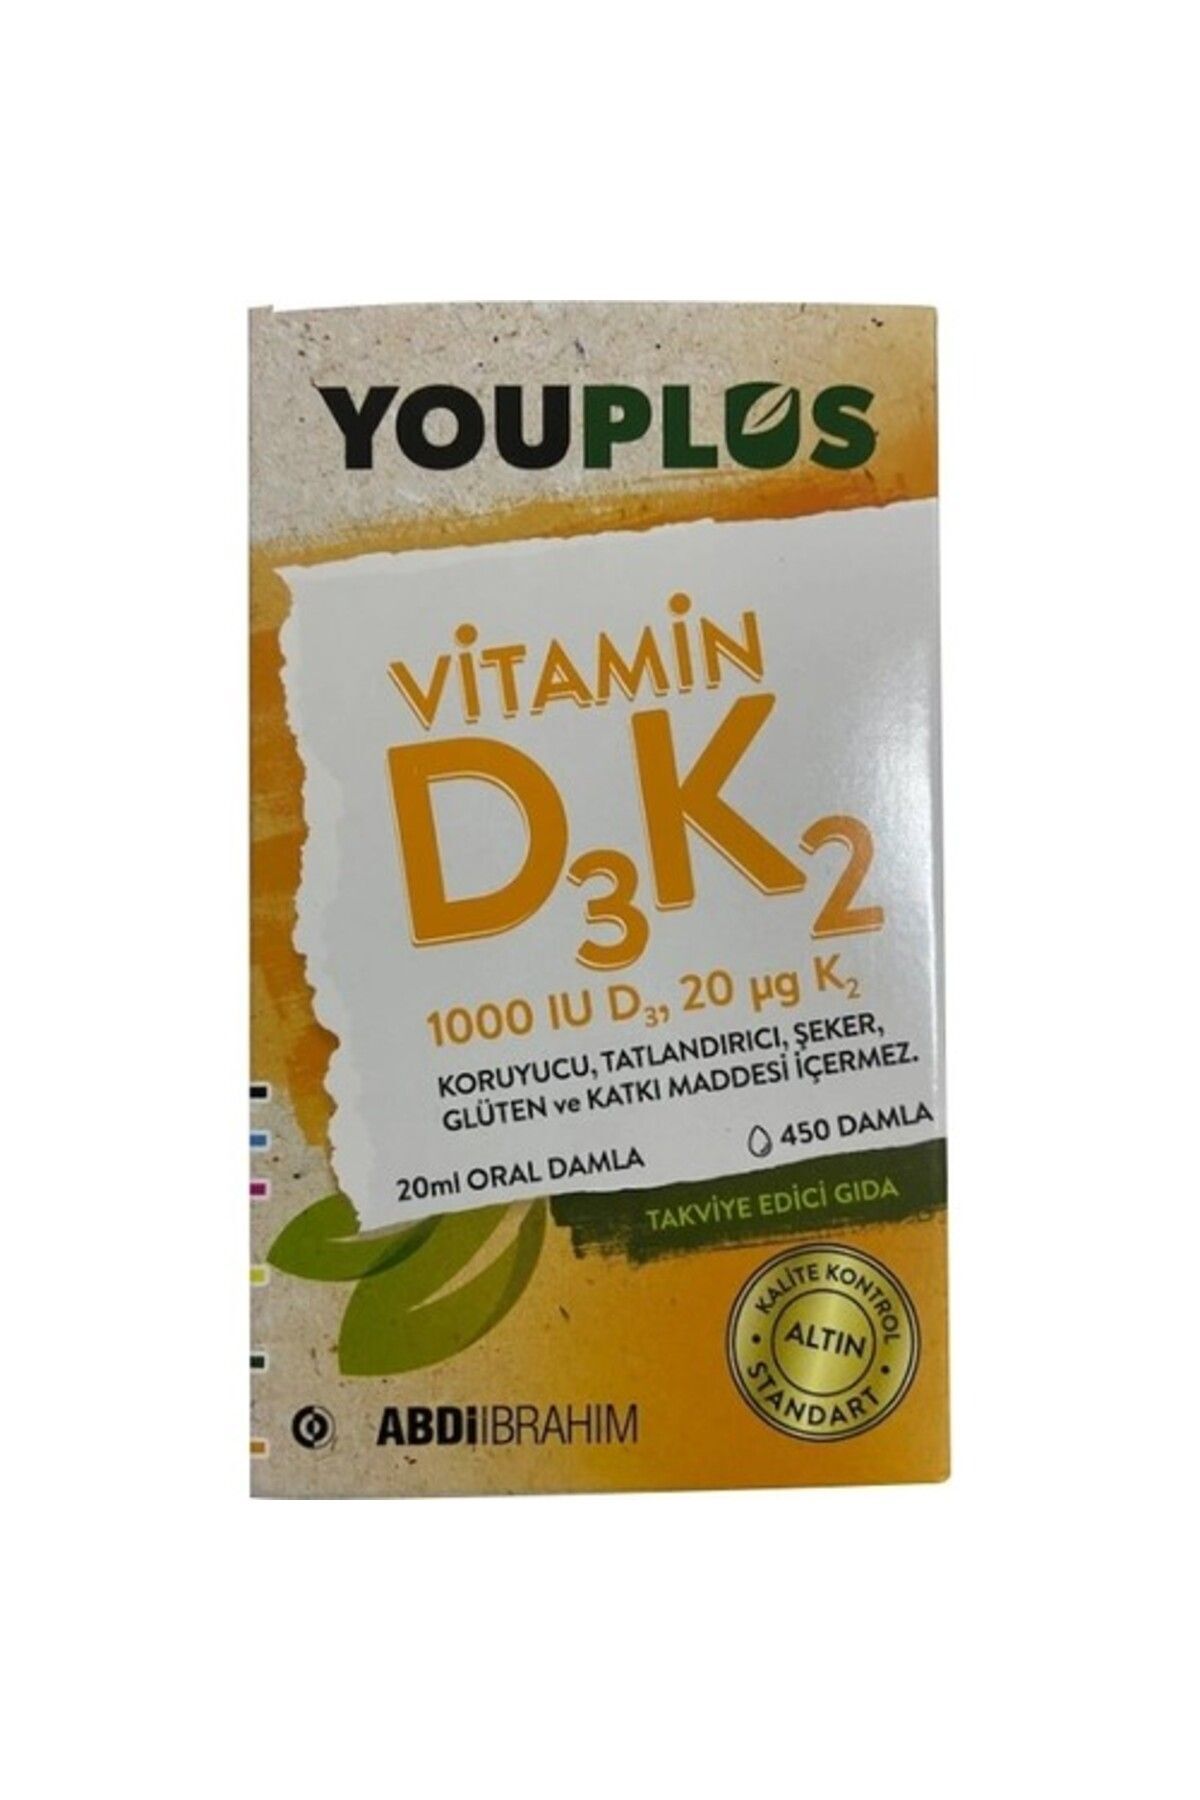 ABDİİBRAHİM Youplus Vitamin D3k2 1000 Iu 20 ml Oral Damla - Abdi Ibrahim